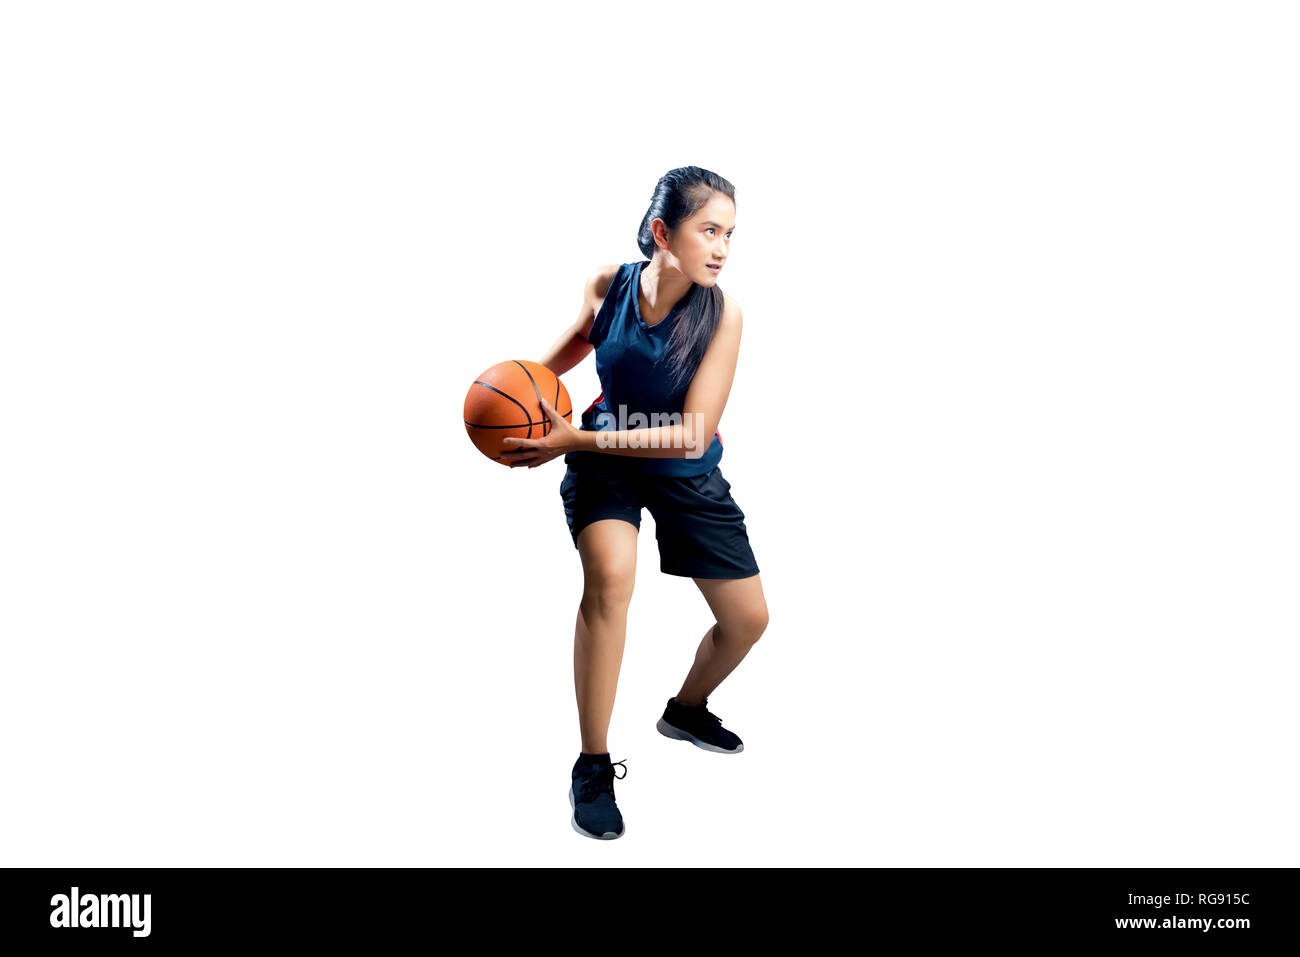 Fille qui joue au basket Banque d'images détourées - Alamy